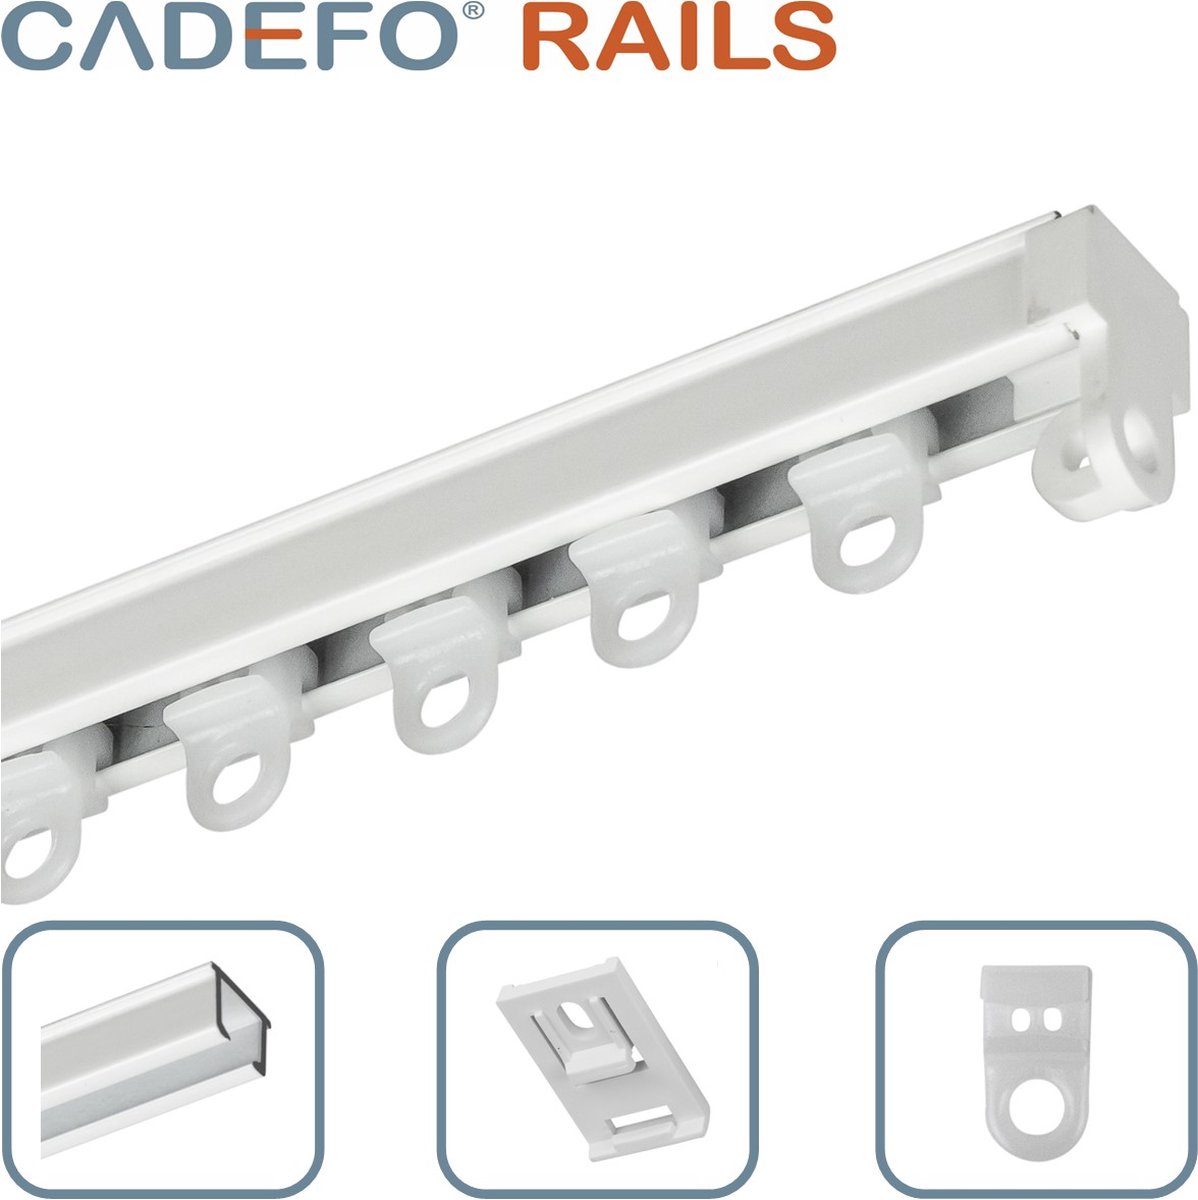 CADEFO RAILS (301 - 350 cm) Gordijnrails - Compleet op maat! - UIT 1 STUK - Leverbaar tot 6 meter - Plafondbevestiging - Lengte 348 cm